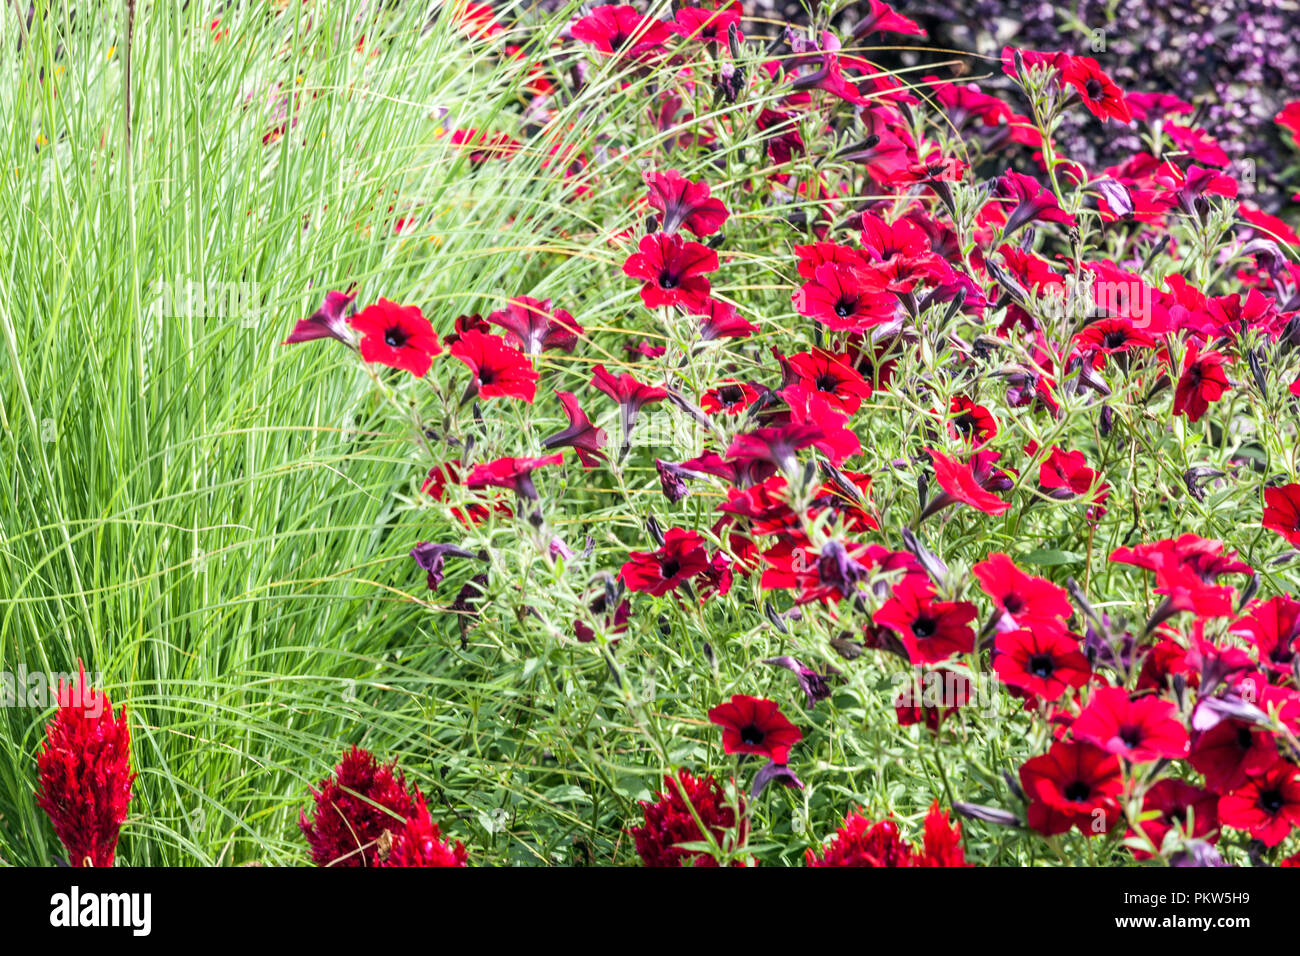 Una combinación colorida de un lecho de flores de verano en un jardín, Celosia, petunia, césped ornamental, precioso jardín de flores Foto de stock